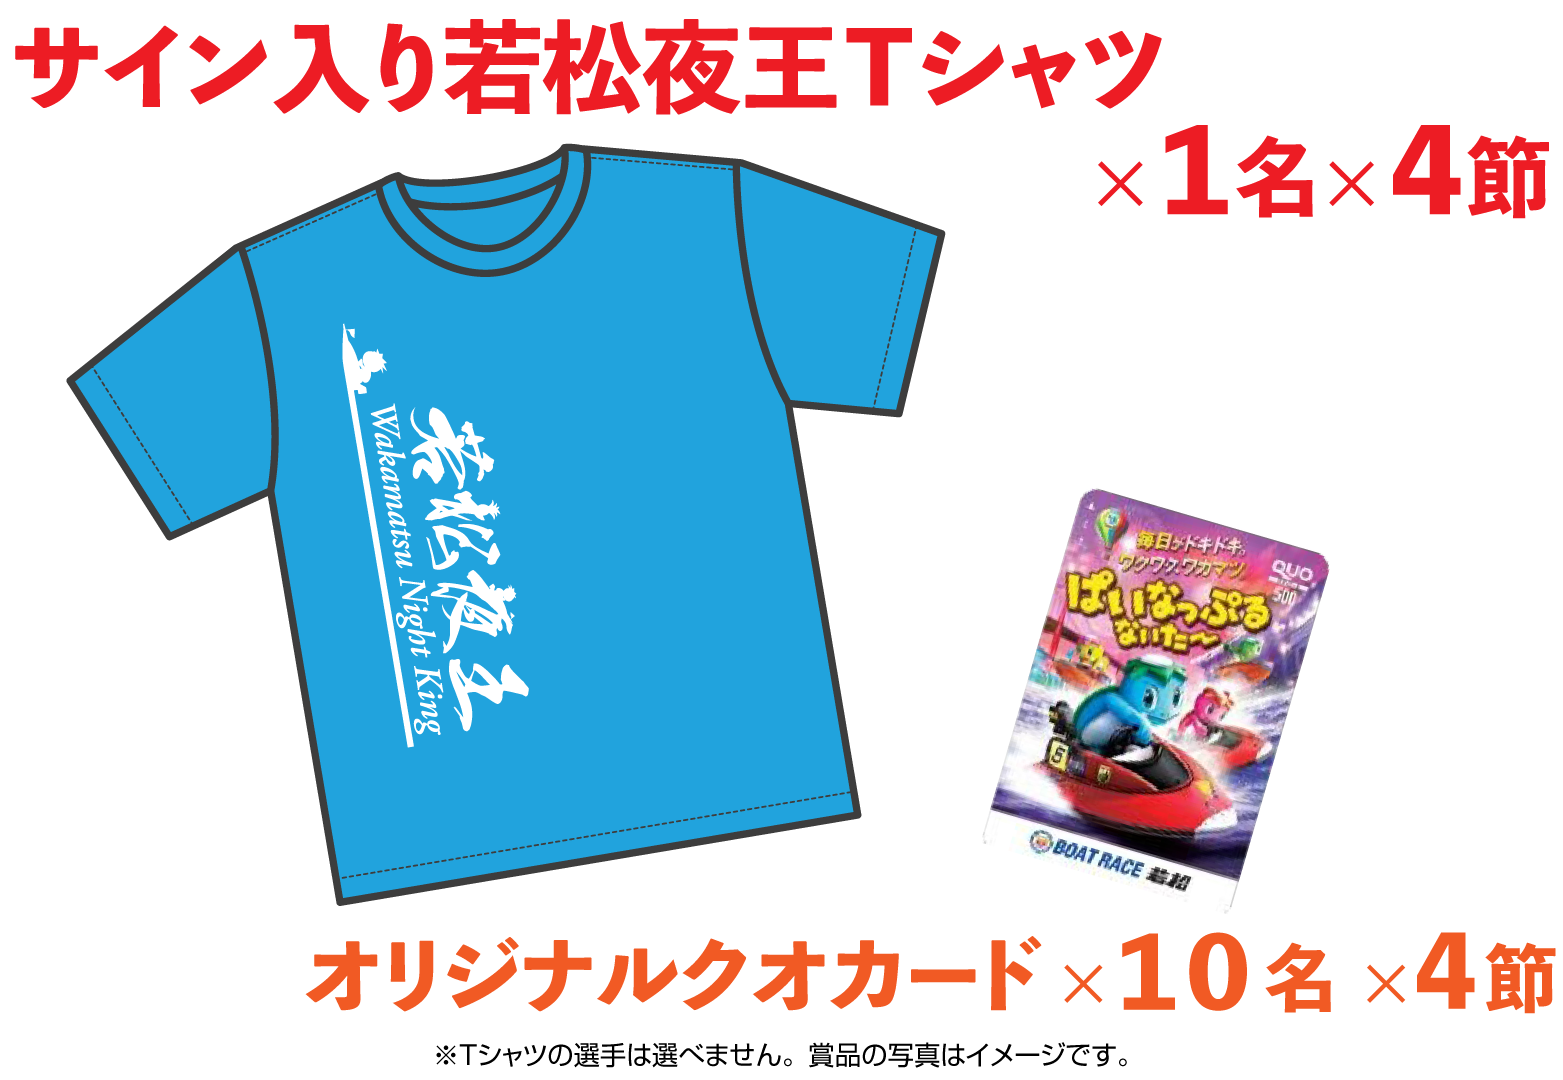 サイン入り若松夜王Tシャツ(1名×3節)・オリジナルクオカード(10名×3節)